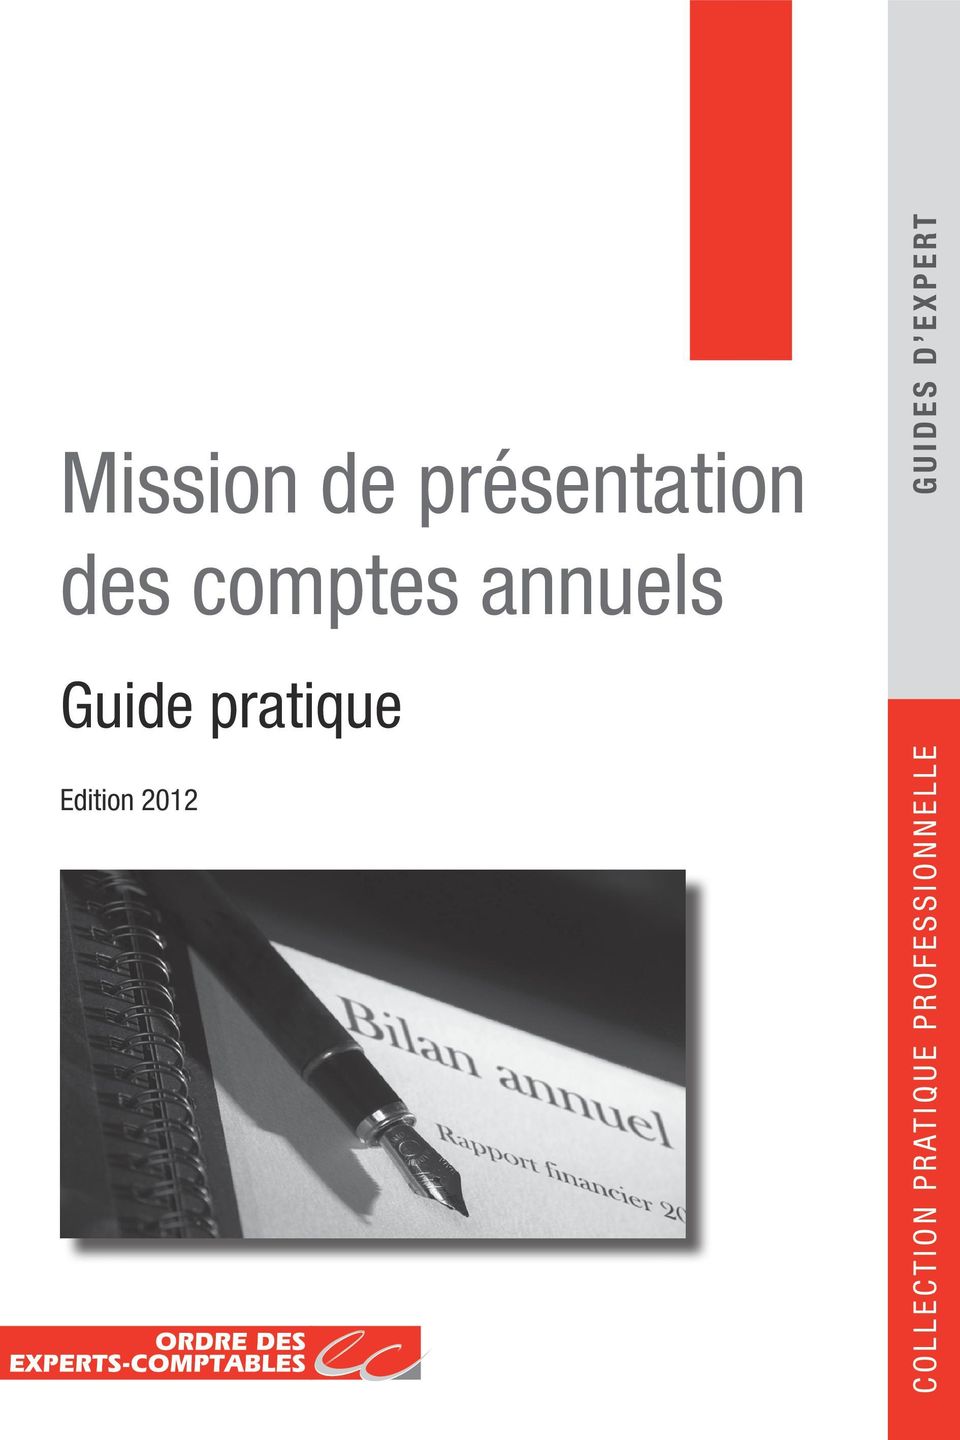 Guide pratique Edition 2012